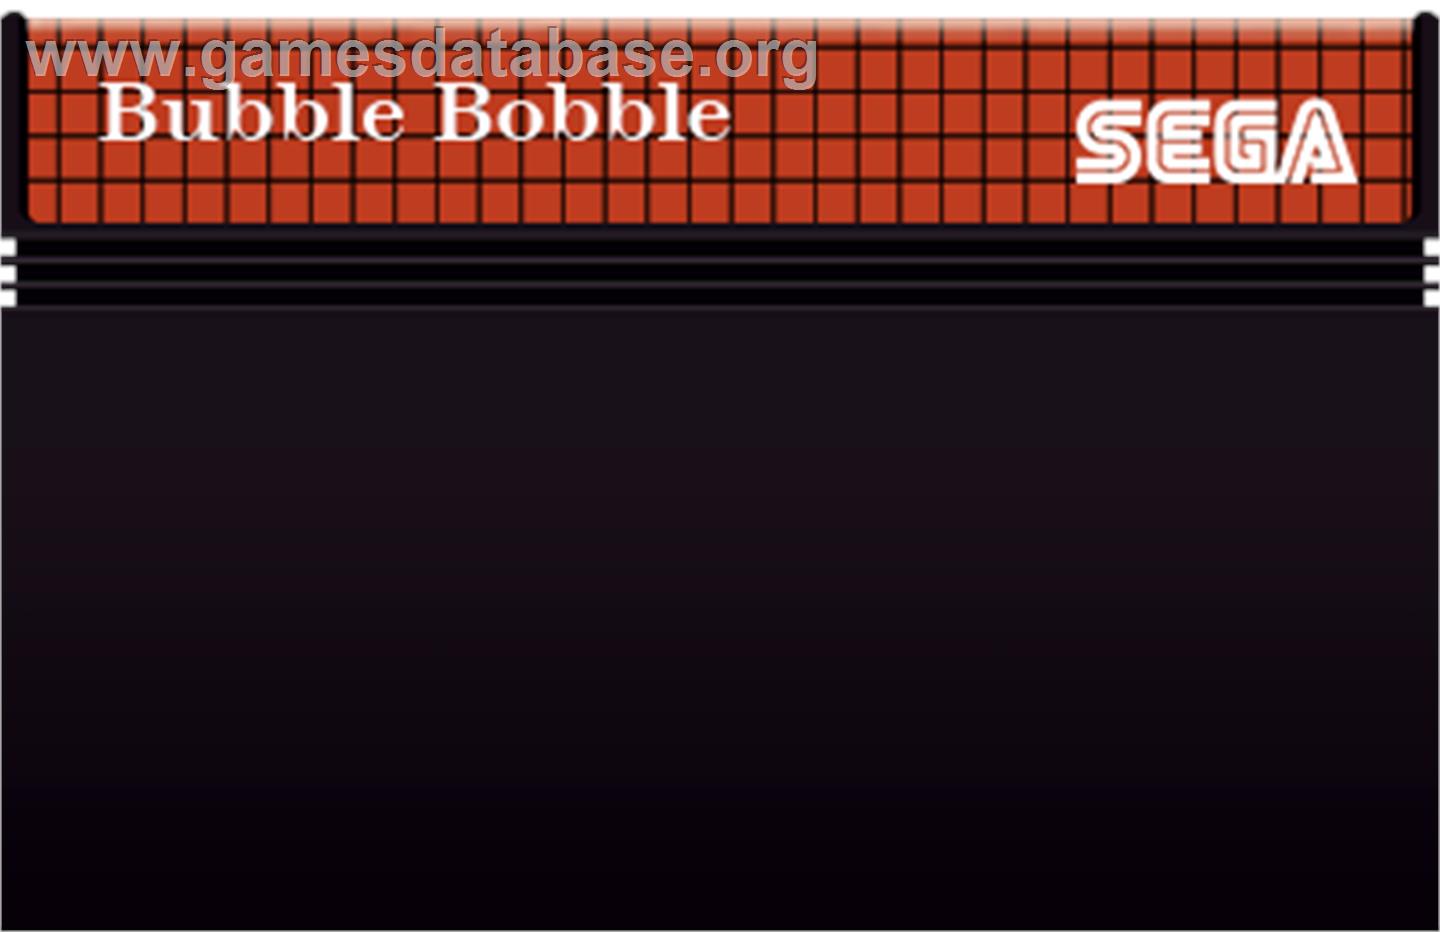 Bubble Bobble - SEGA Master System Games